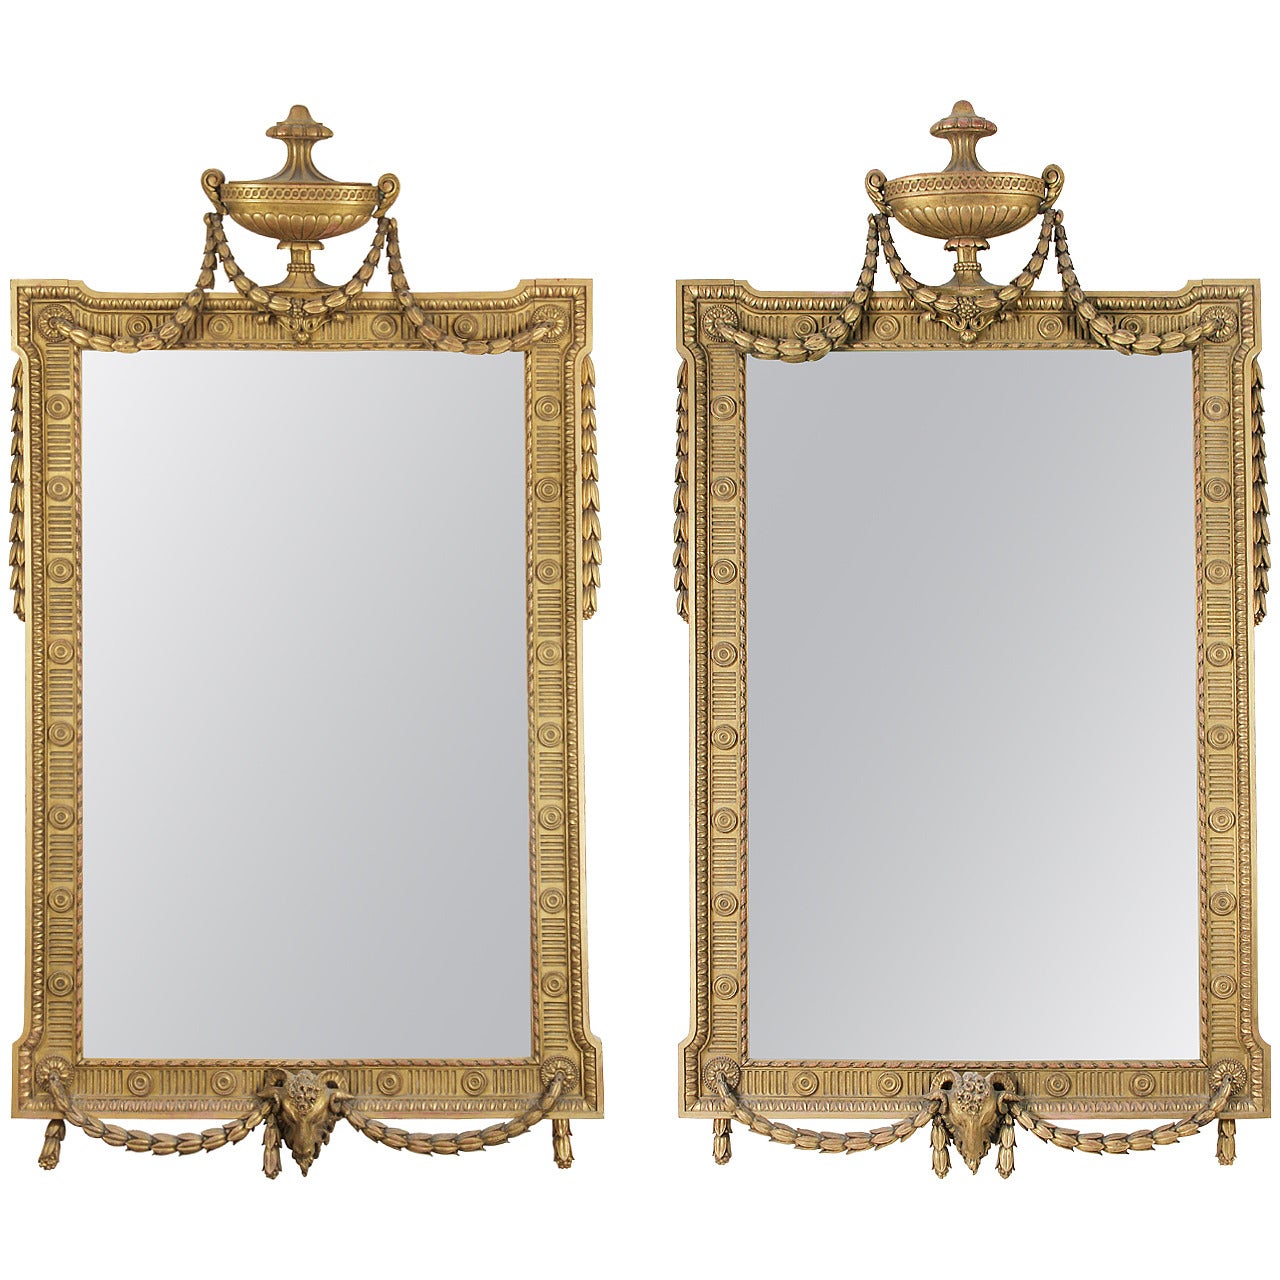 Pair of George III Adams Style Giltwood Mirrors